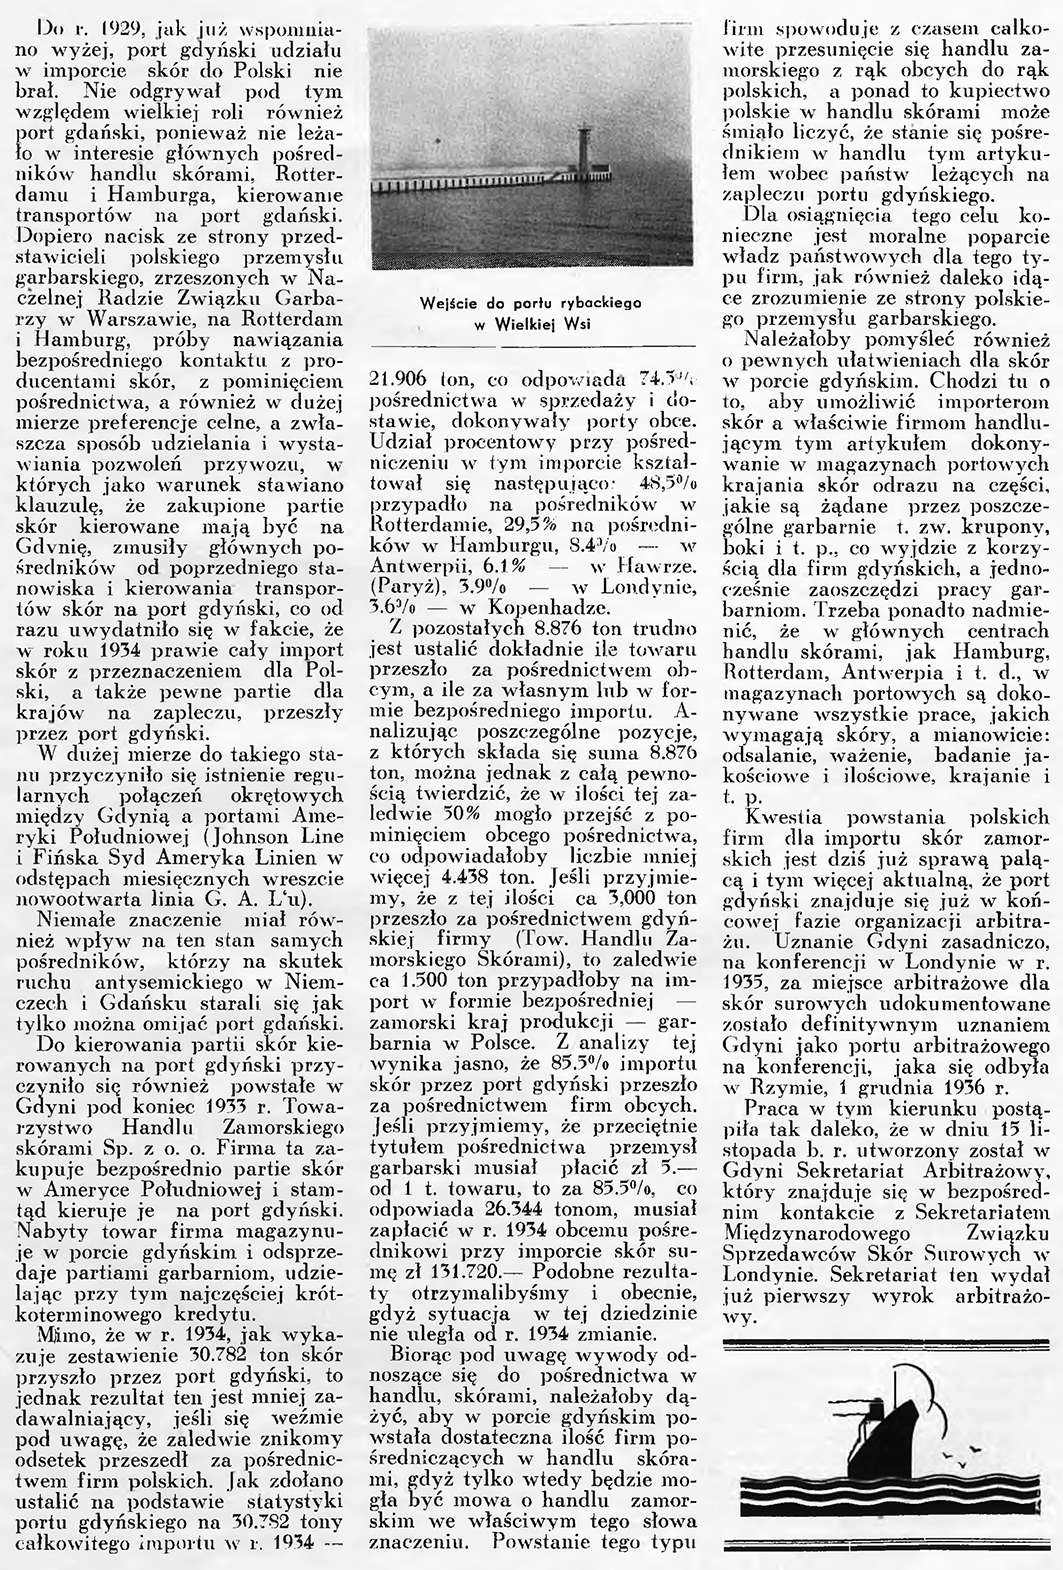 Zagadnienie importu skór droga morska / B. K. // Wiadomości Portu Gdyńskiego. - 1937, nr 12, s. 9-11. - Il.